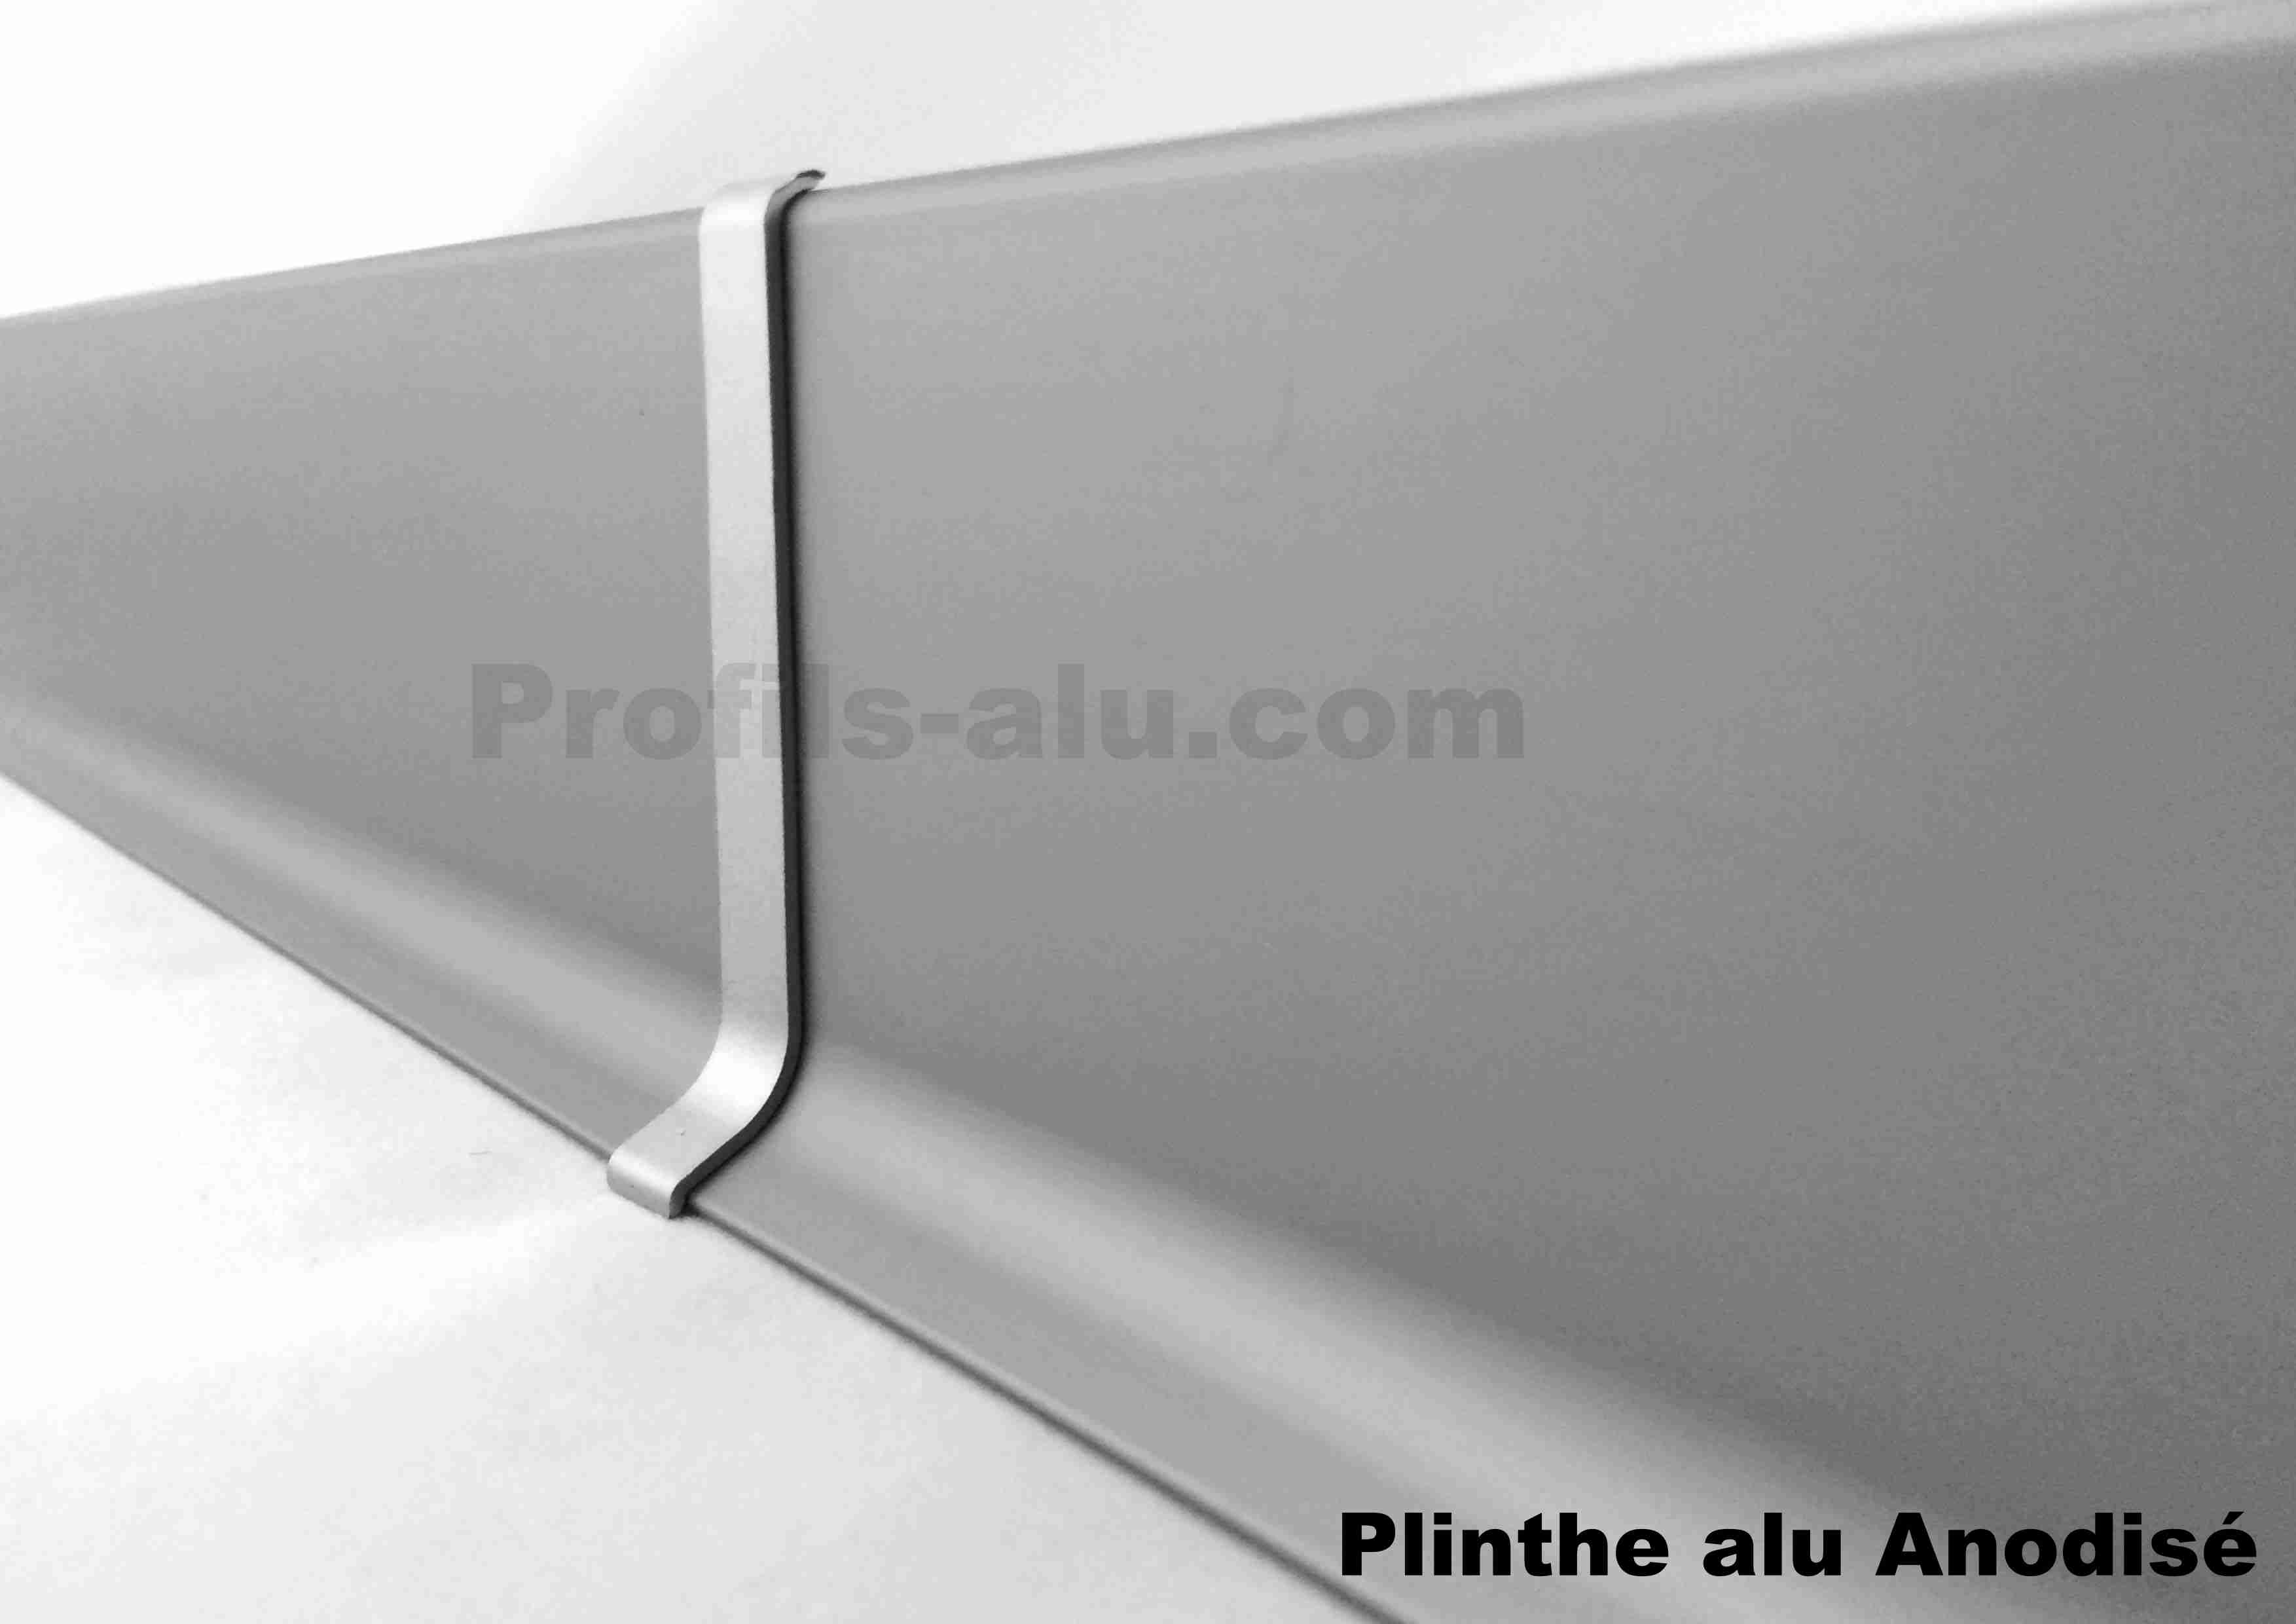 80 mm FUCHS Plinthe aluminium 125 MÉTRE Hauteur